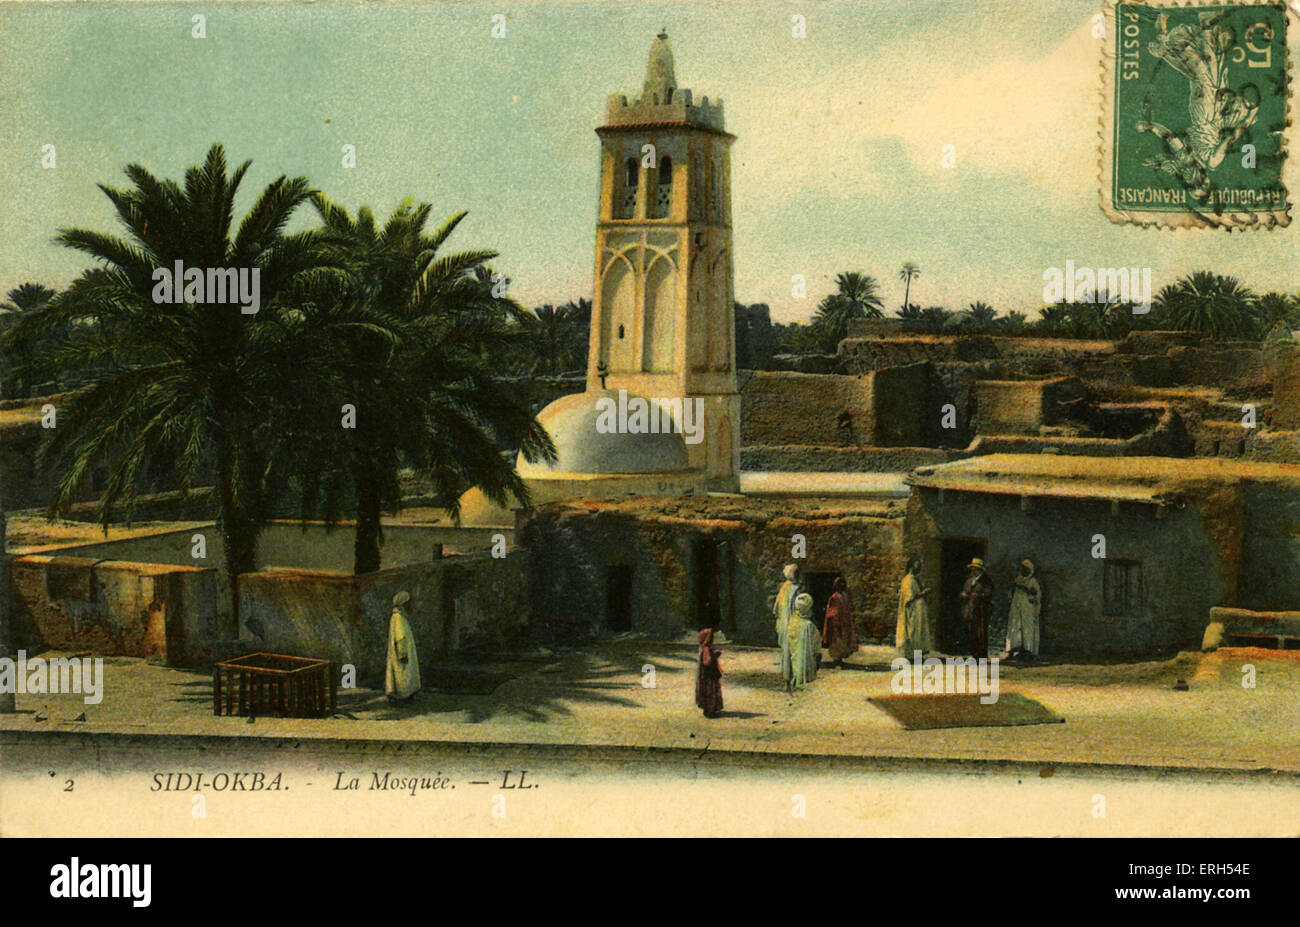 Sidi Okba, Algérie : La Mosquée (mosquée).Timbre-poste à l'avant. Carte postale. Banque D'Images